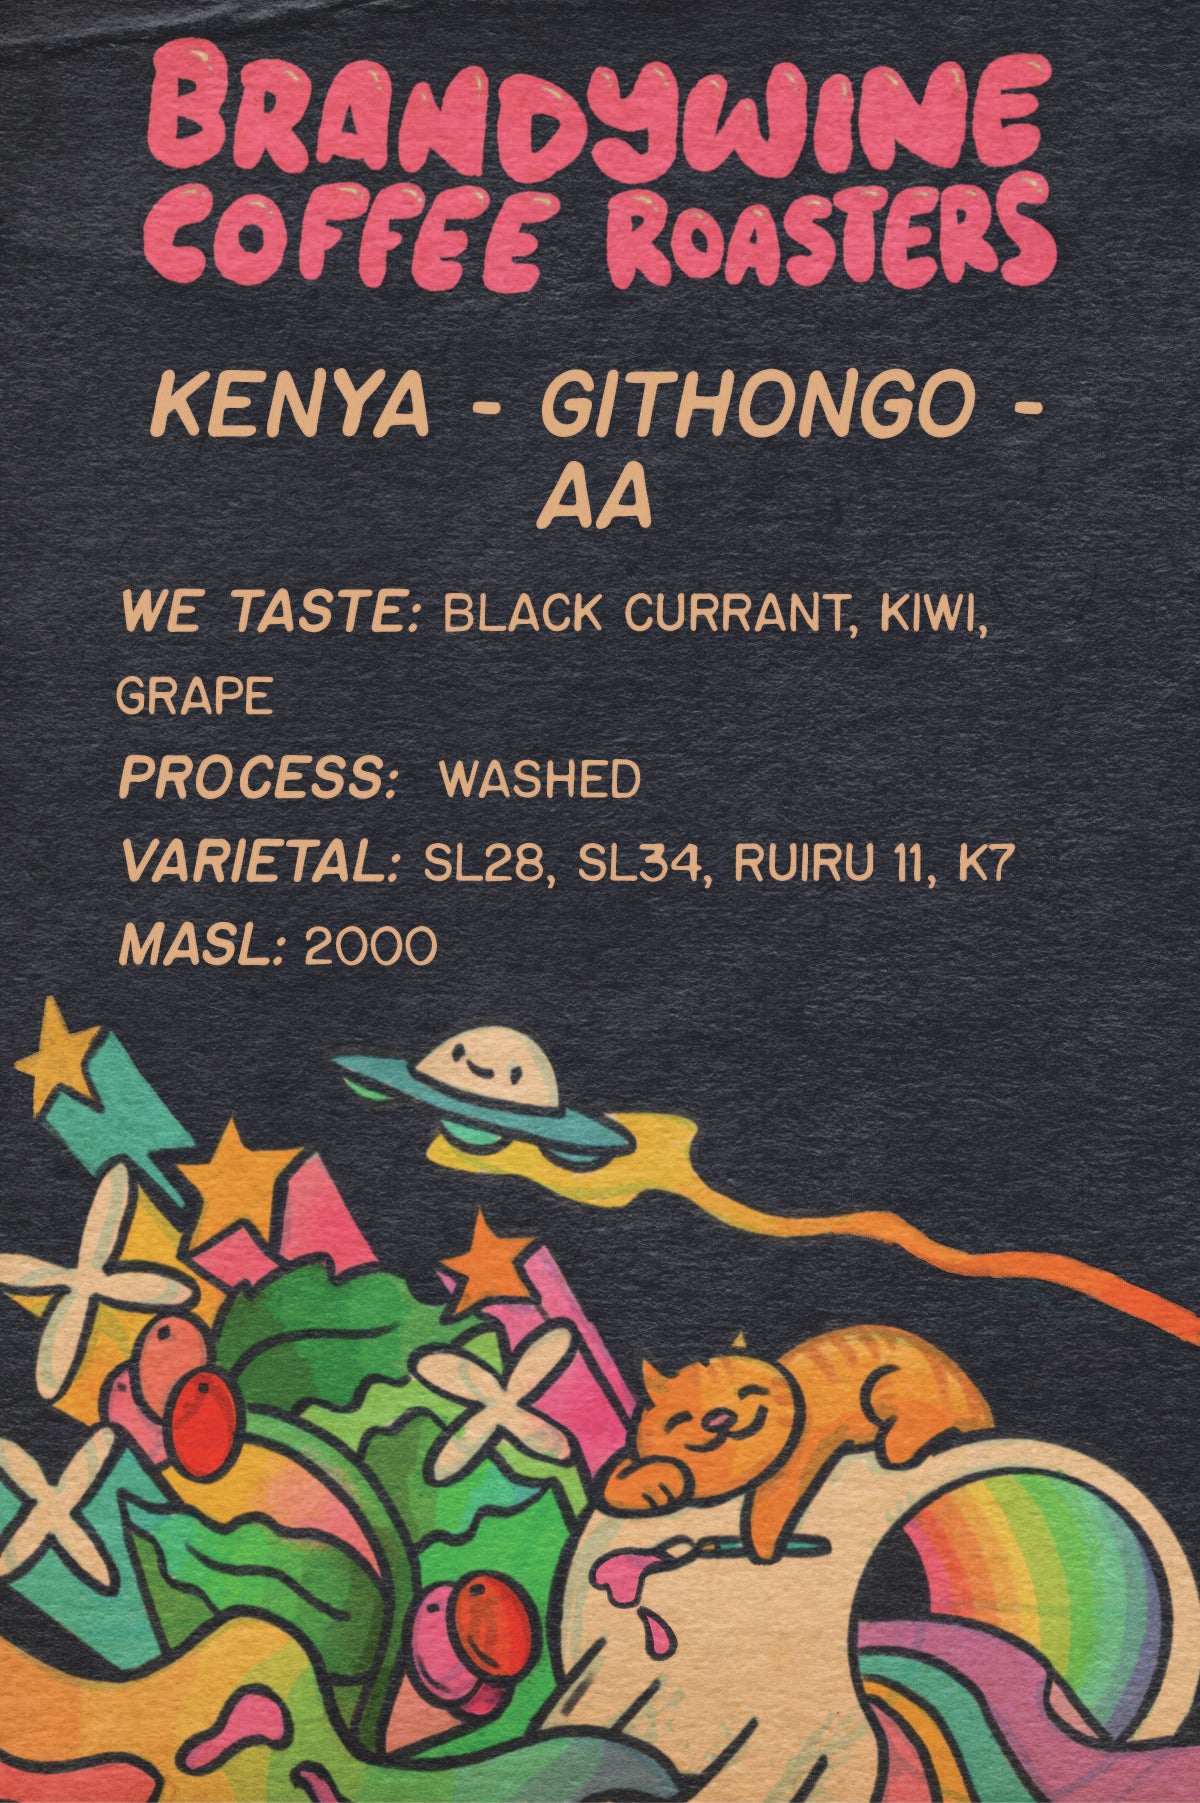 Kenya - Githongo - AA